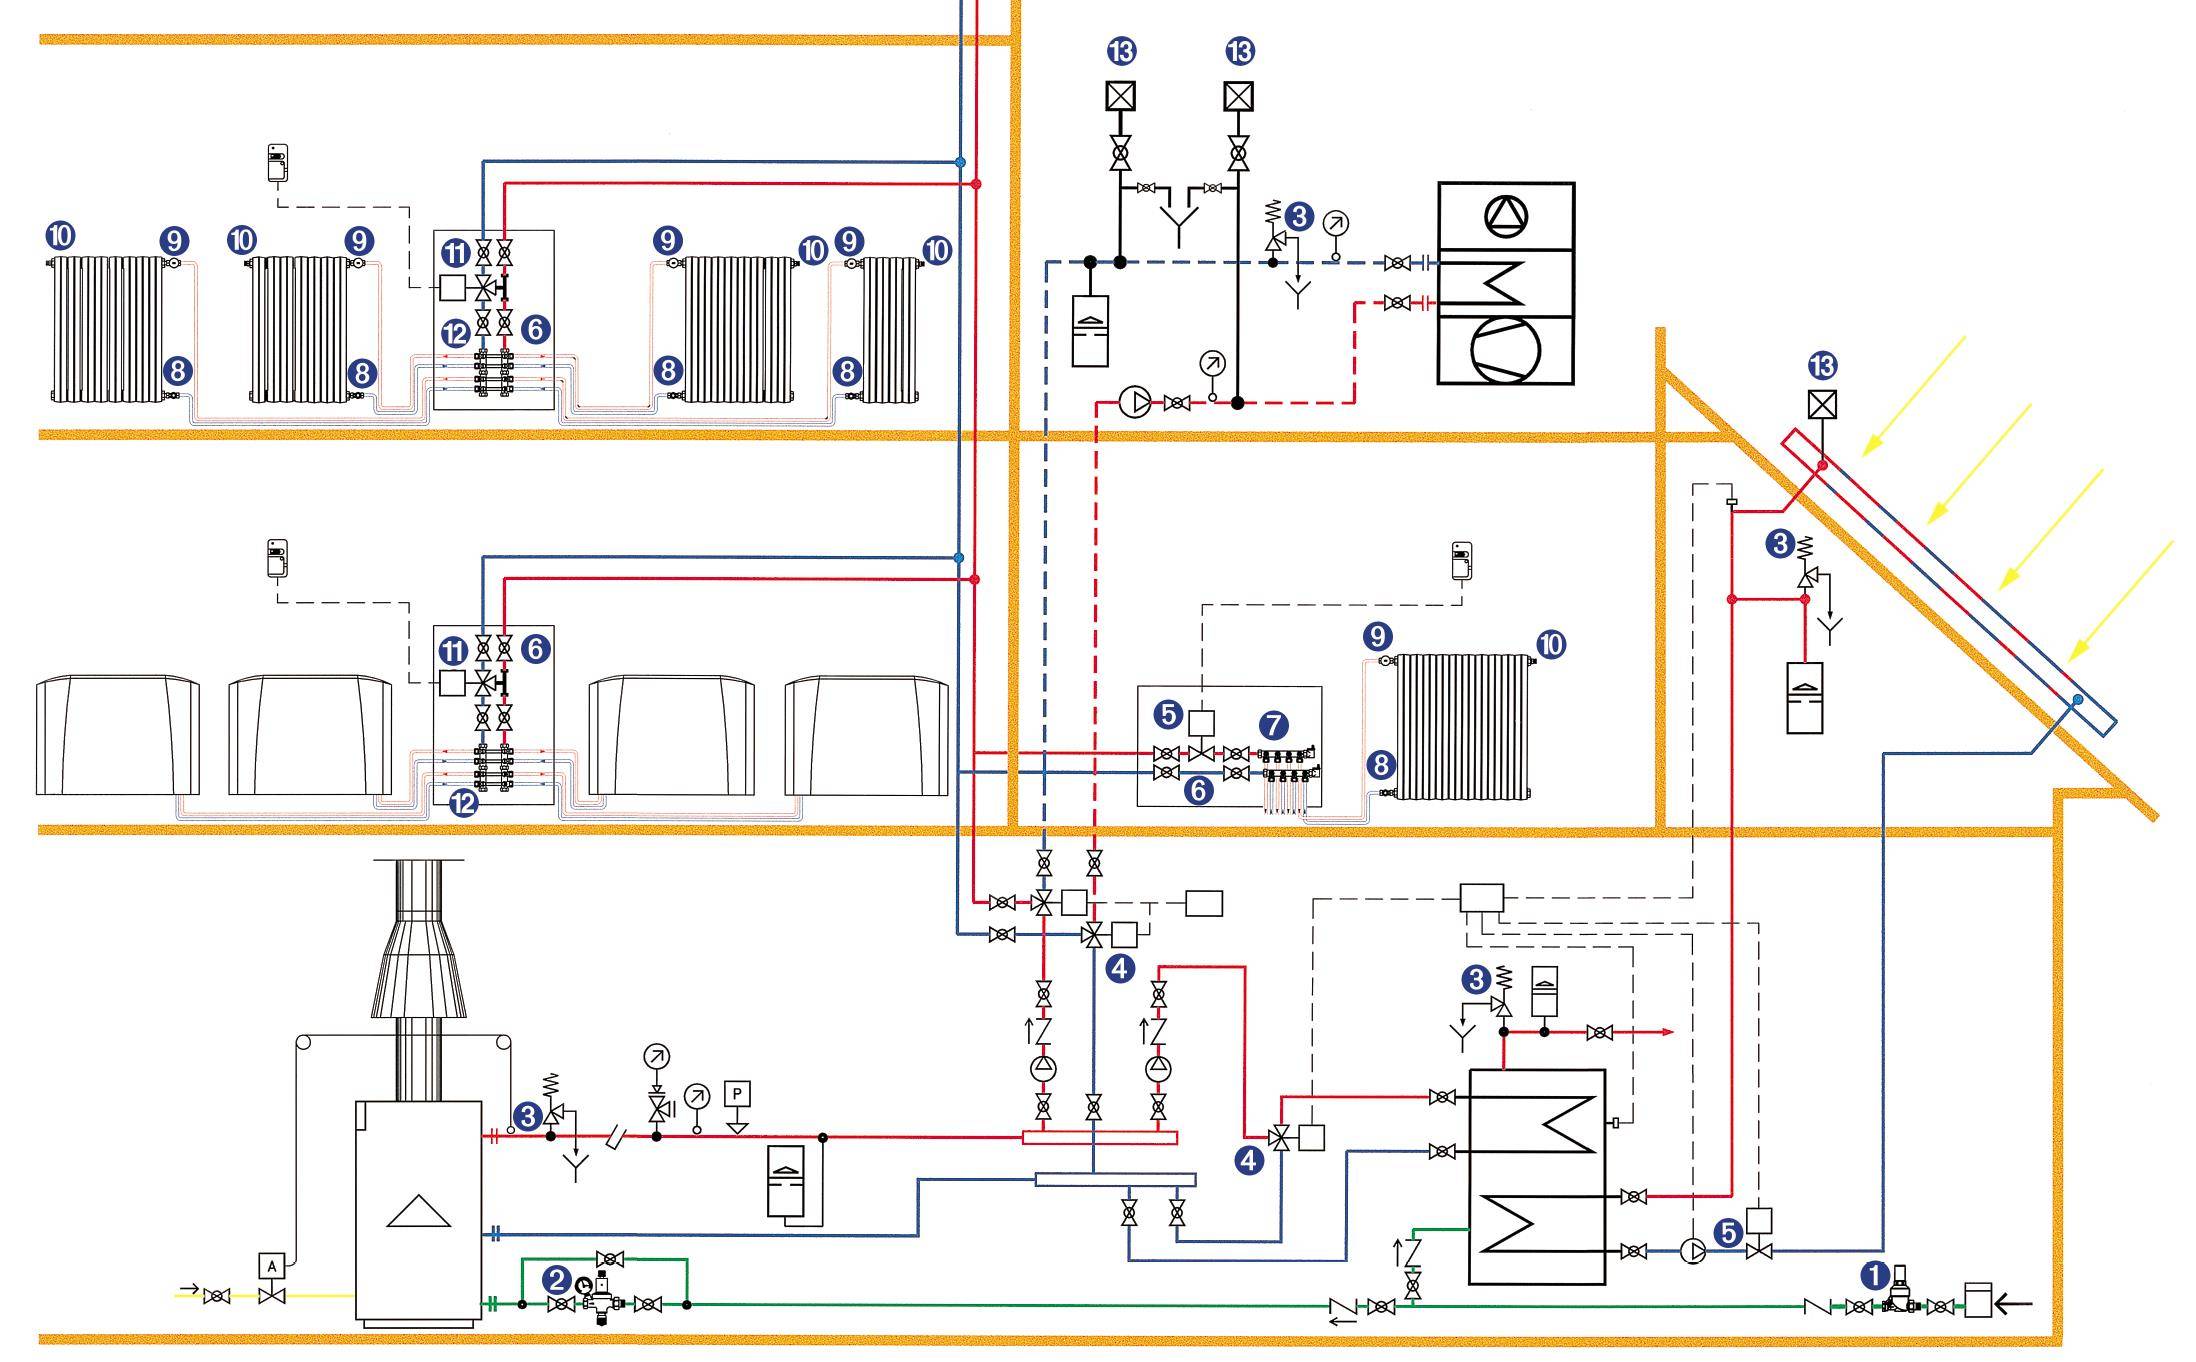 Как сделать отопление в частном доме: как правильно провести систему водяного отопления своими руками, что нужно для проведения, как организовать, переделать, как варить трубы, как установить эффективное отопление самостоятельно